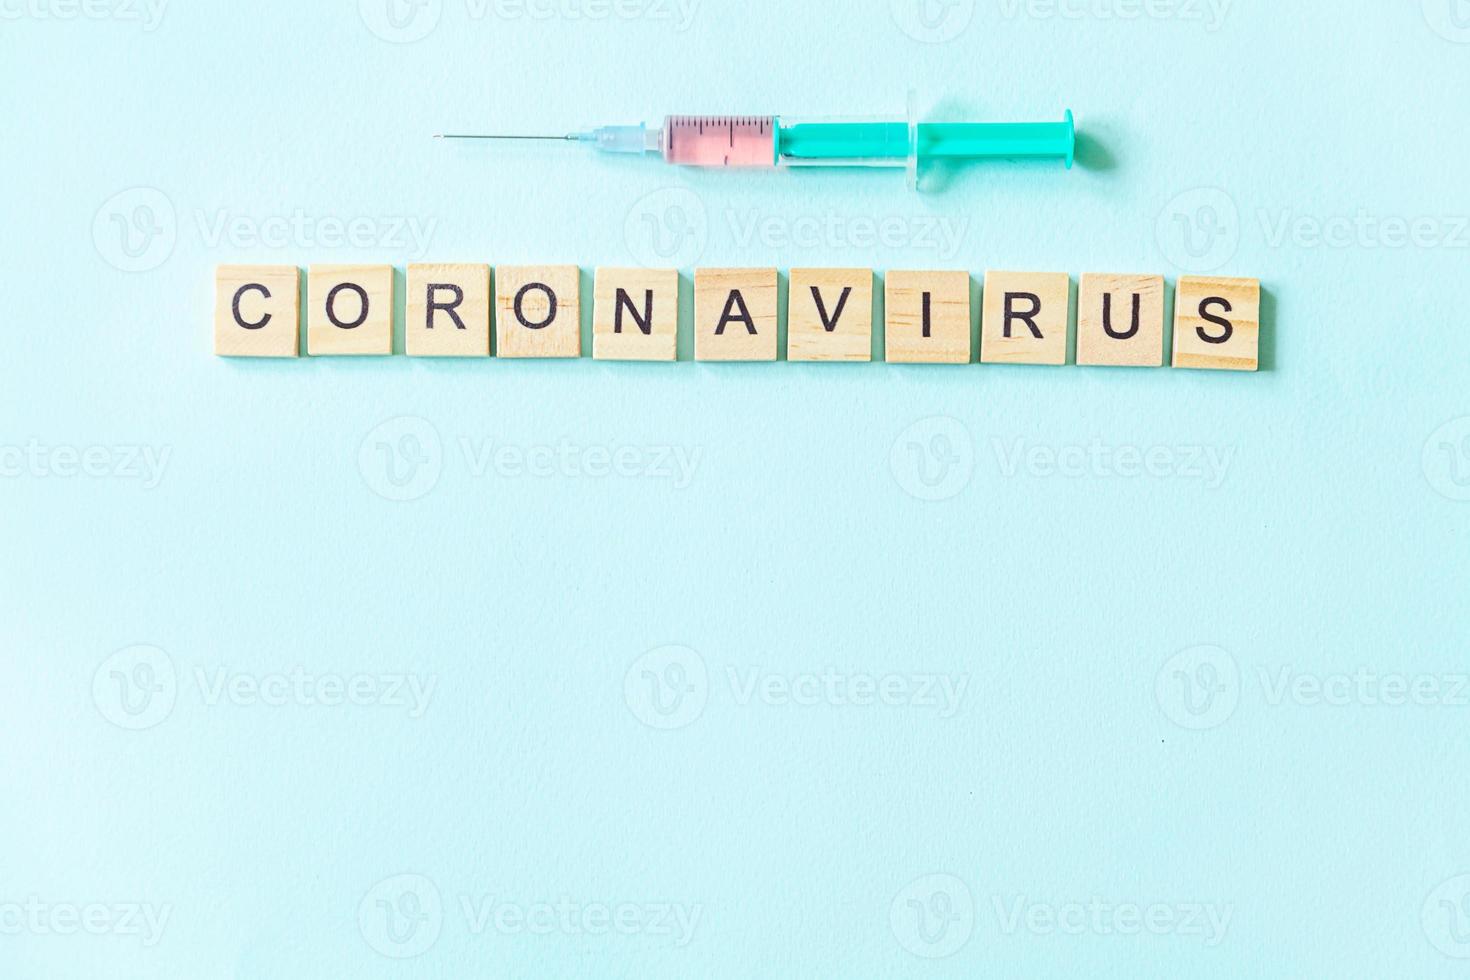 frase de texto coronavirus y jeringa sobre fondo azul pastel. nuevo coronavirus 2019-ncov mers-cov covid-19 concepto de vacuna contra el virus del coronavirus del síndrome respiratorio de oriente medio. foto